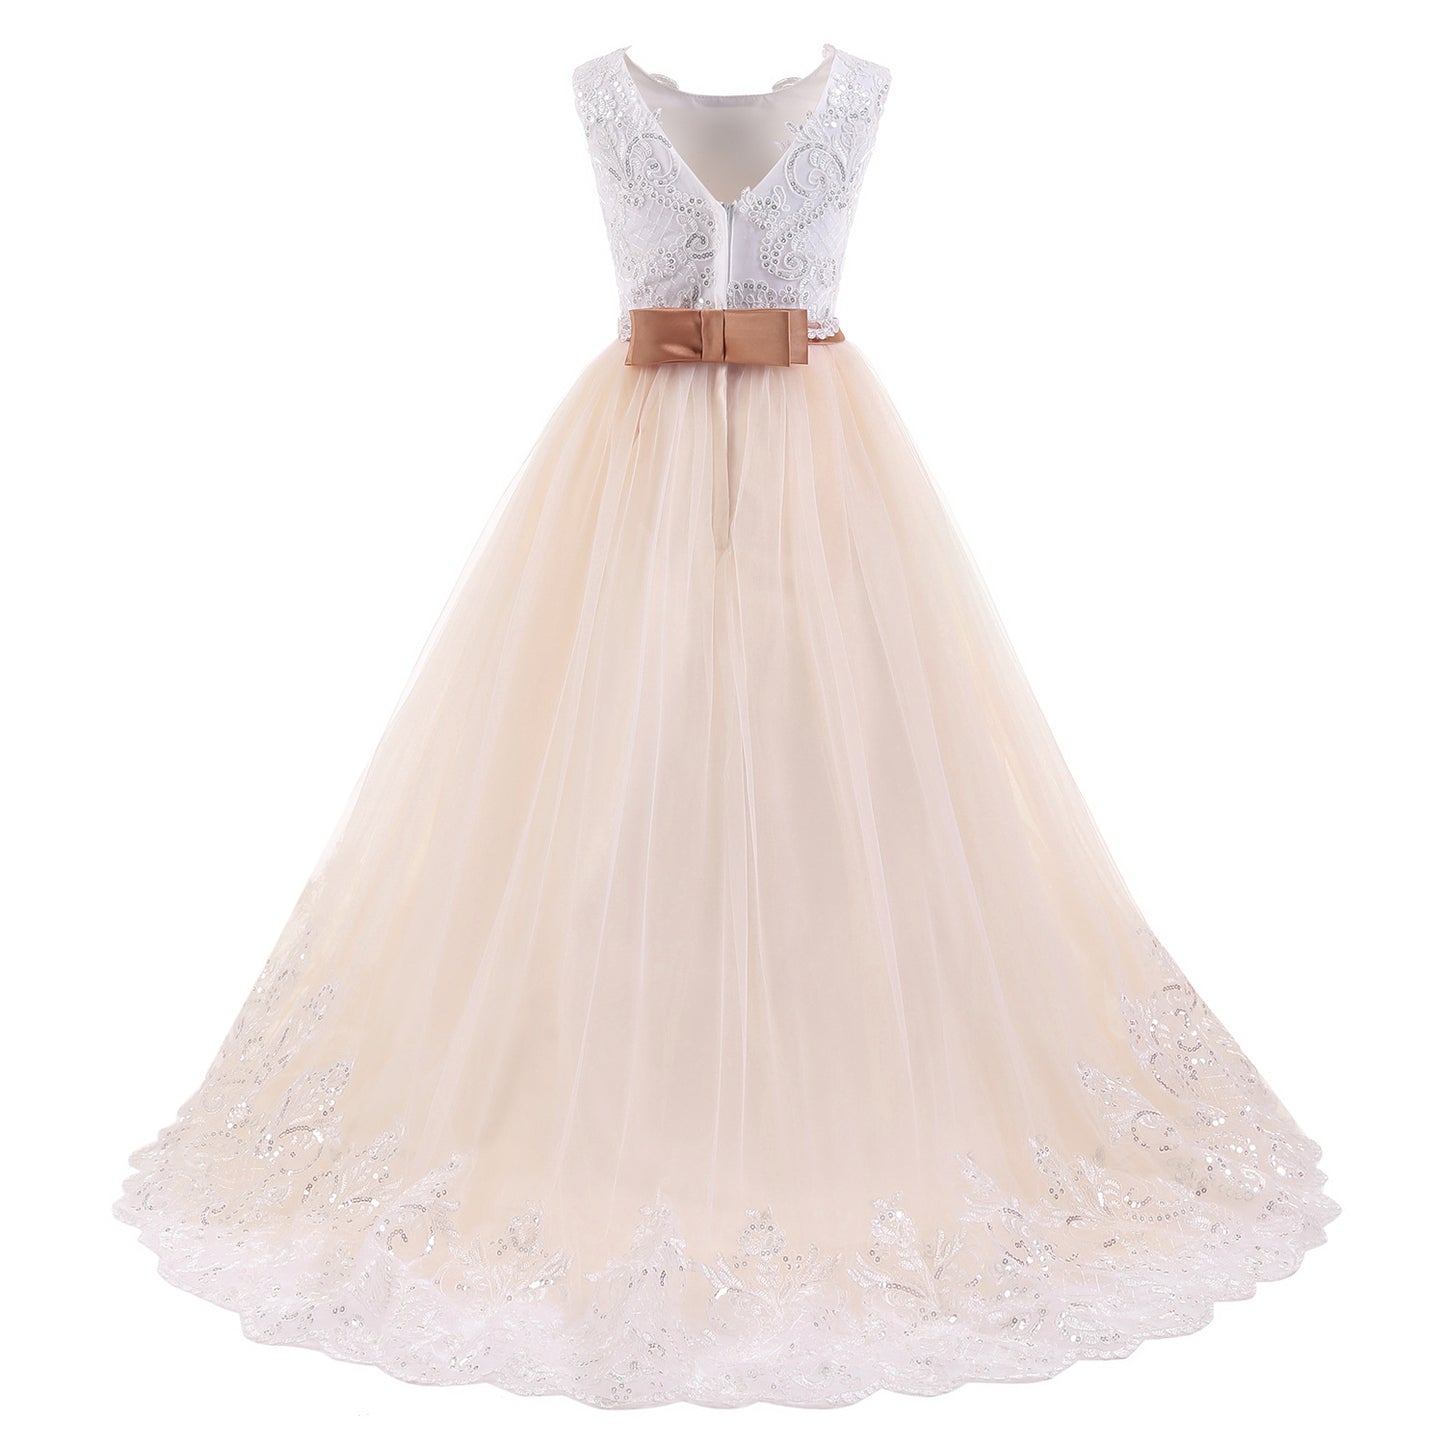 Leslie Baptism Dress / Youth Formal White Dress